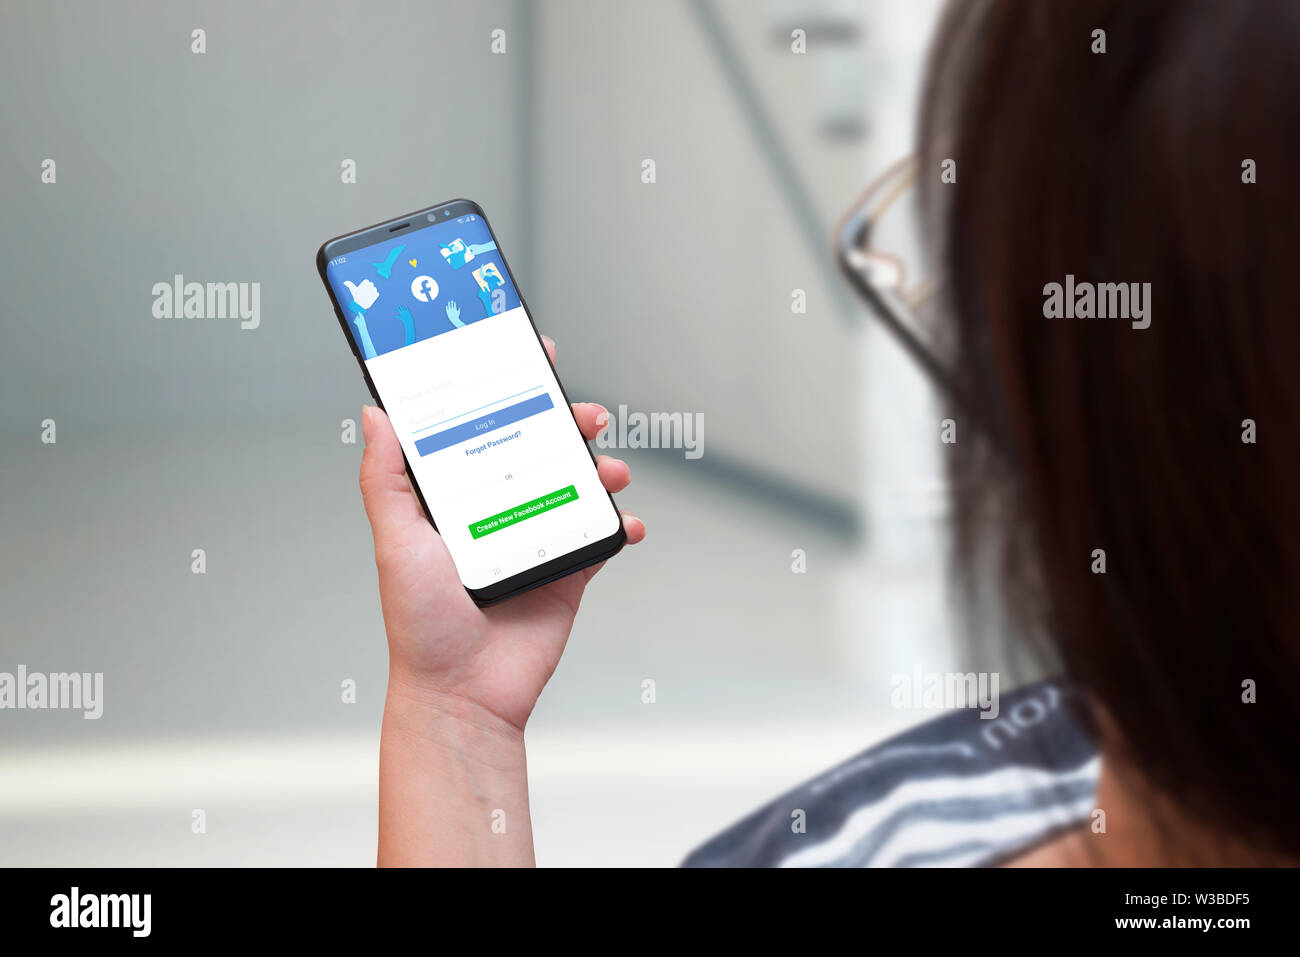 SARAJEVO, BOSNIEN UND HERZEGOWINA - Juli 14, 2019: Frau mit smart phone mit einer neuen überarbeiteten Version von Facebook. Der Begriff Fortschritt und Soc Stockfoto